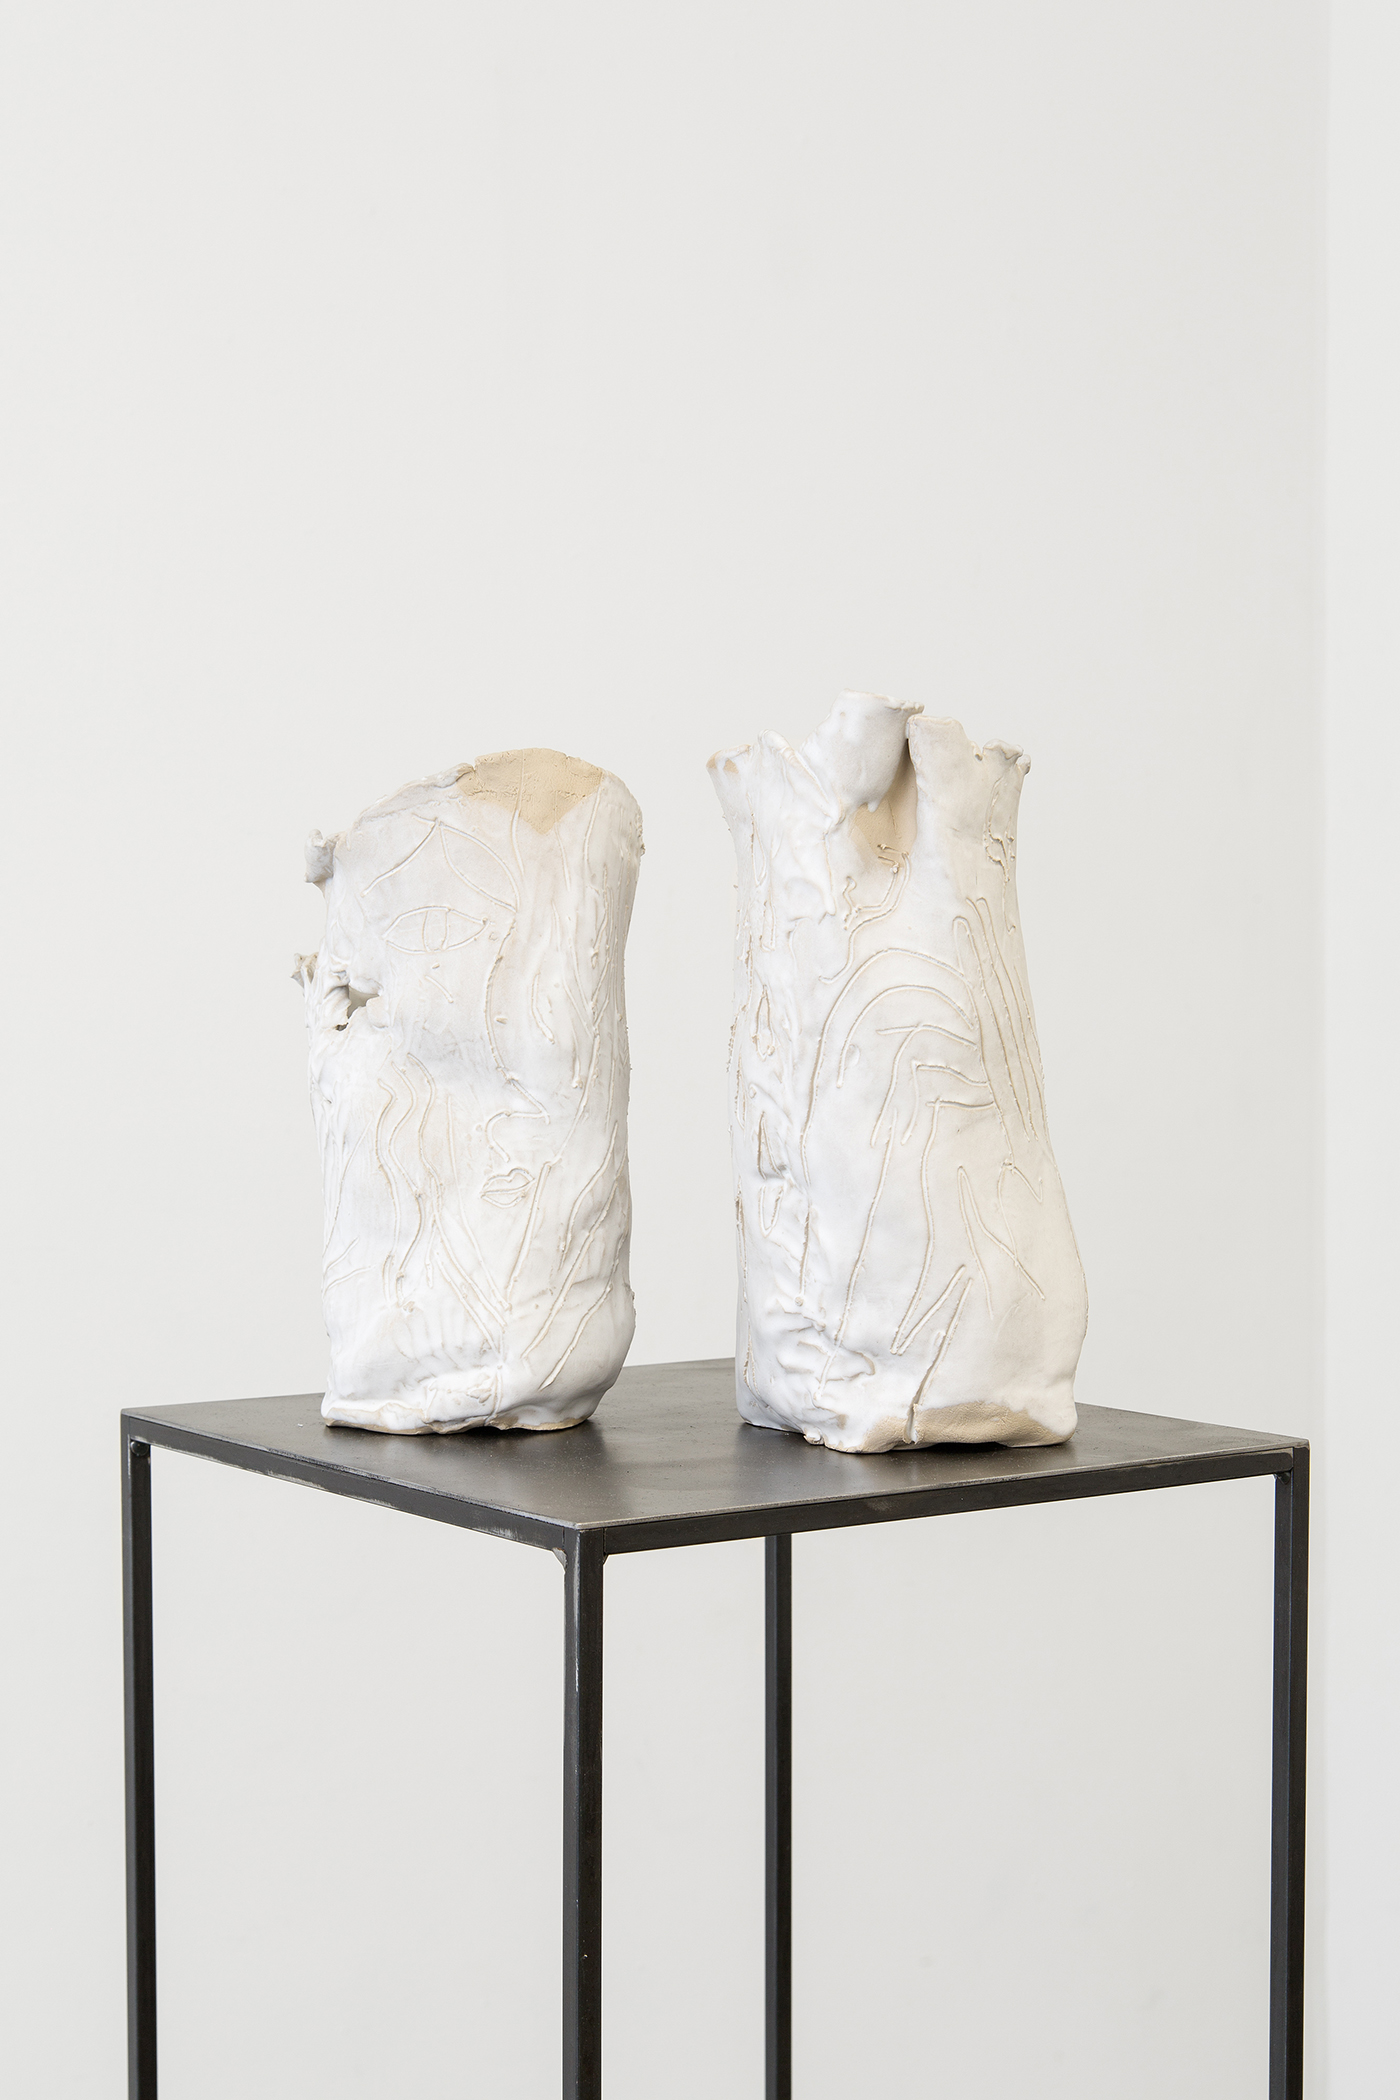  Alina Vergnano,  Untitled (Vase)   I, II , 2019, stoneware, glazed, 38 x 22 cm 